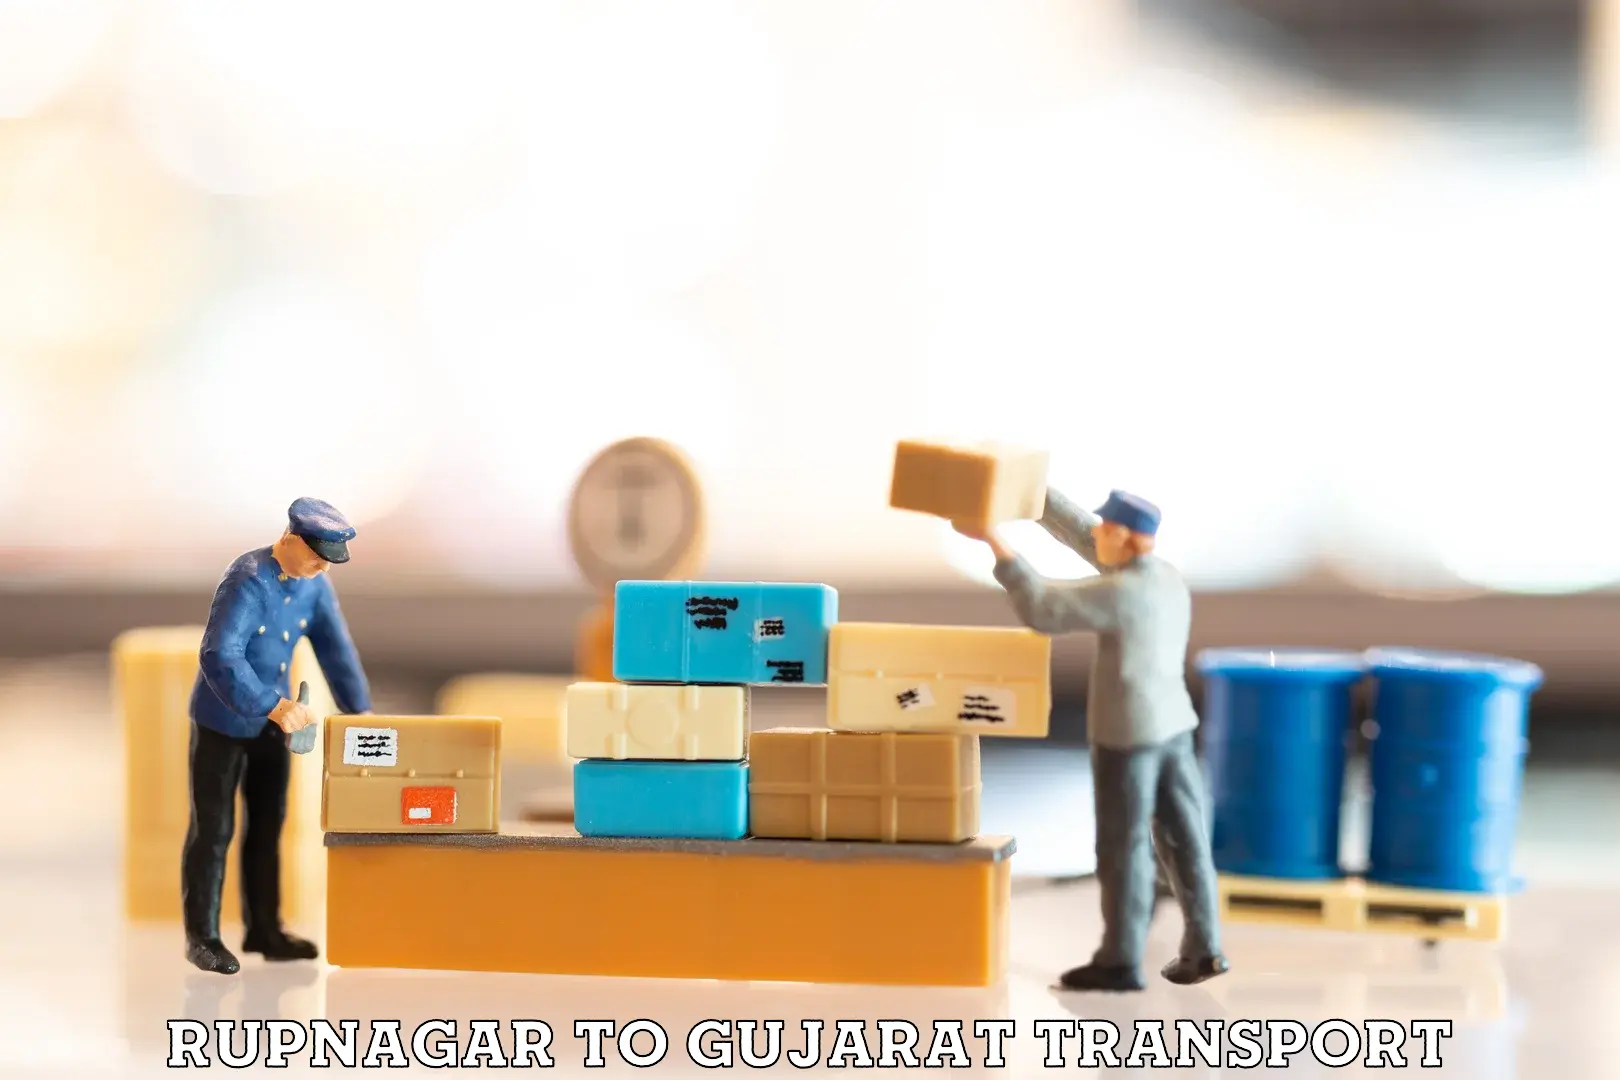 Road transport services Rupnagar to Porbandar